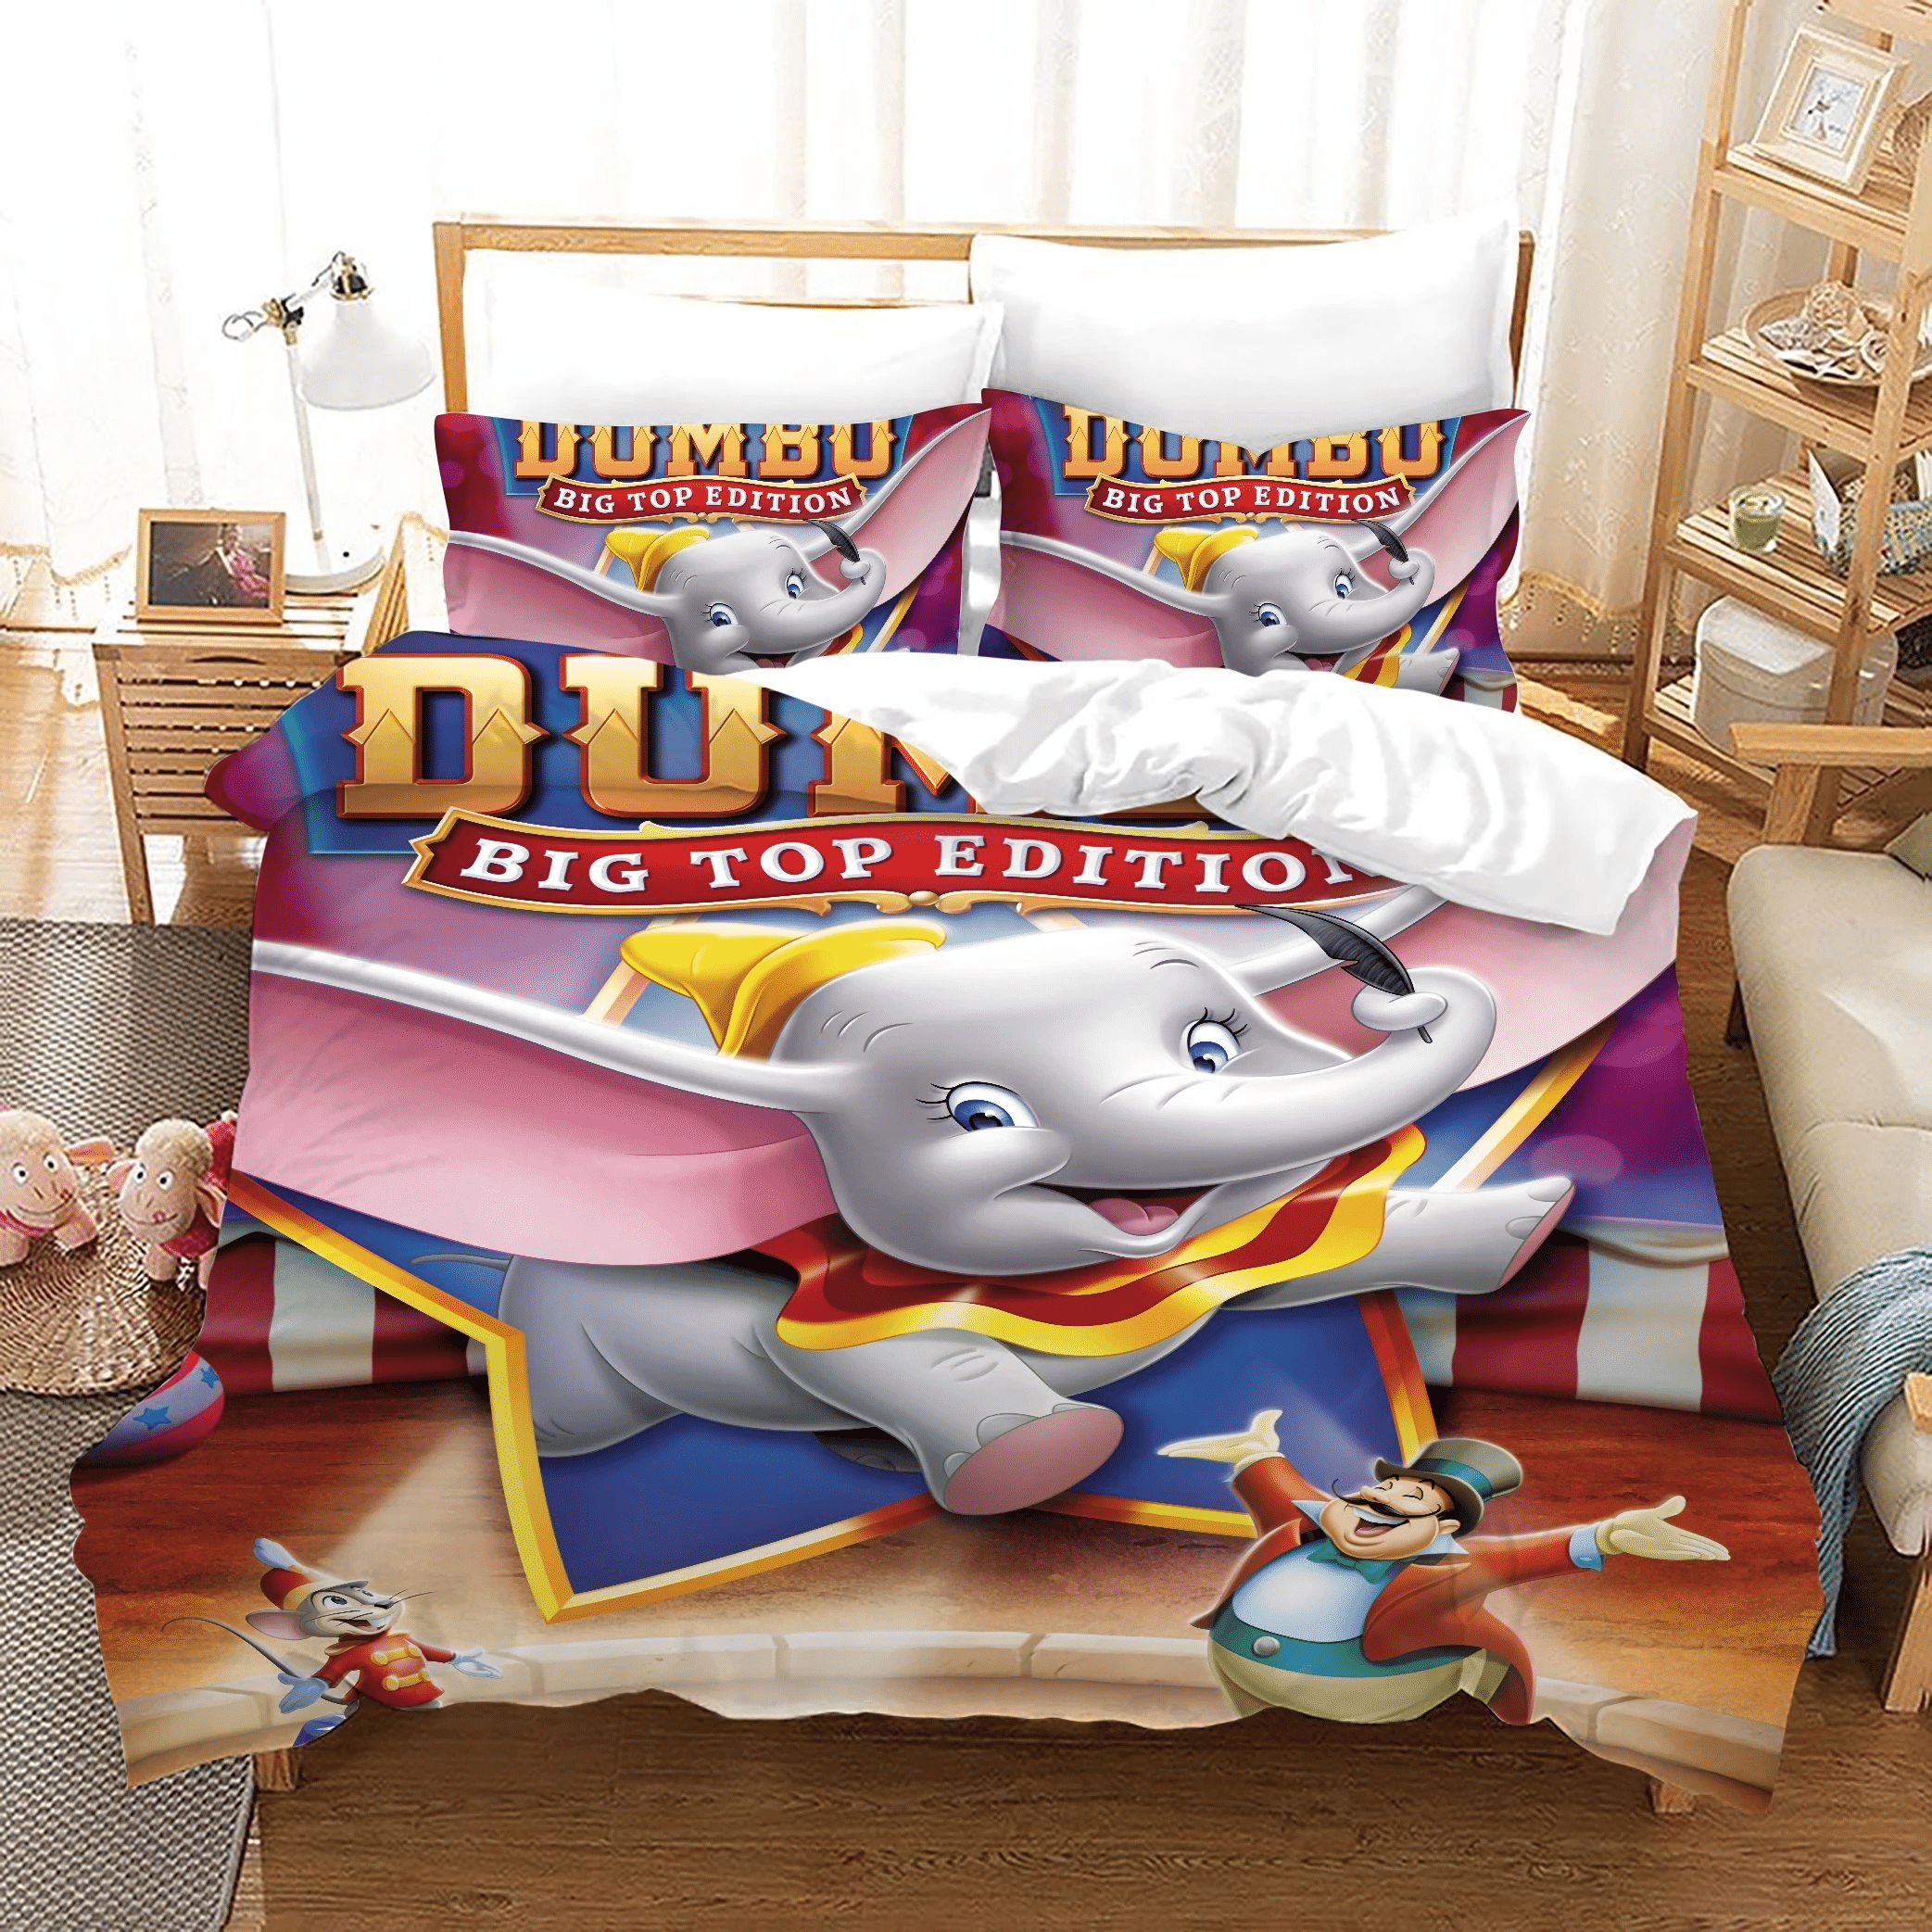 Dumbo 2 Duvet Cover Pillowcase Bedding Sets Home Bedroom Decor